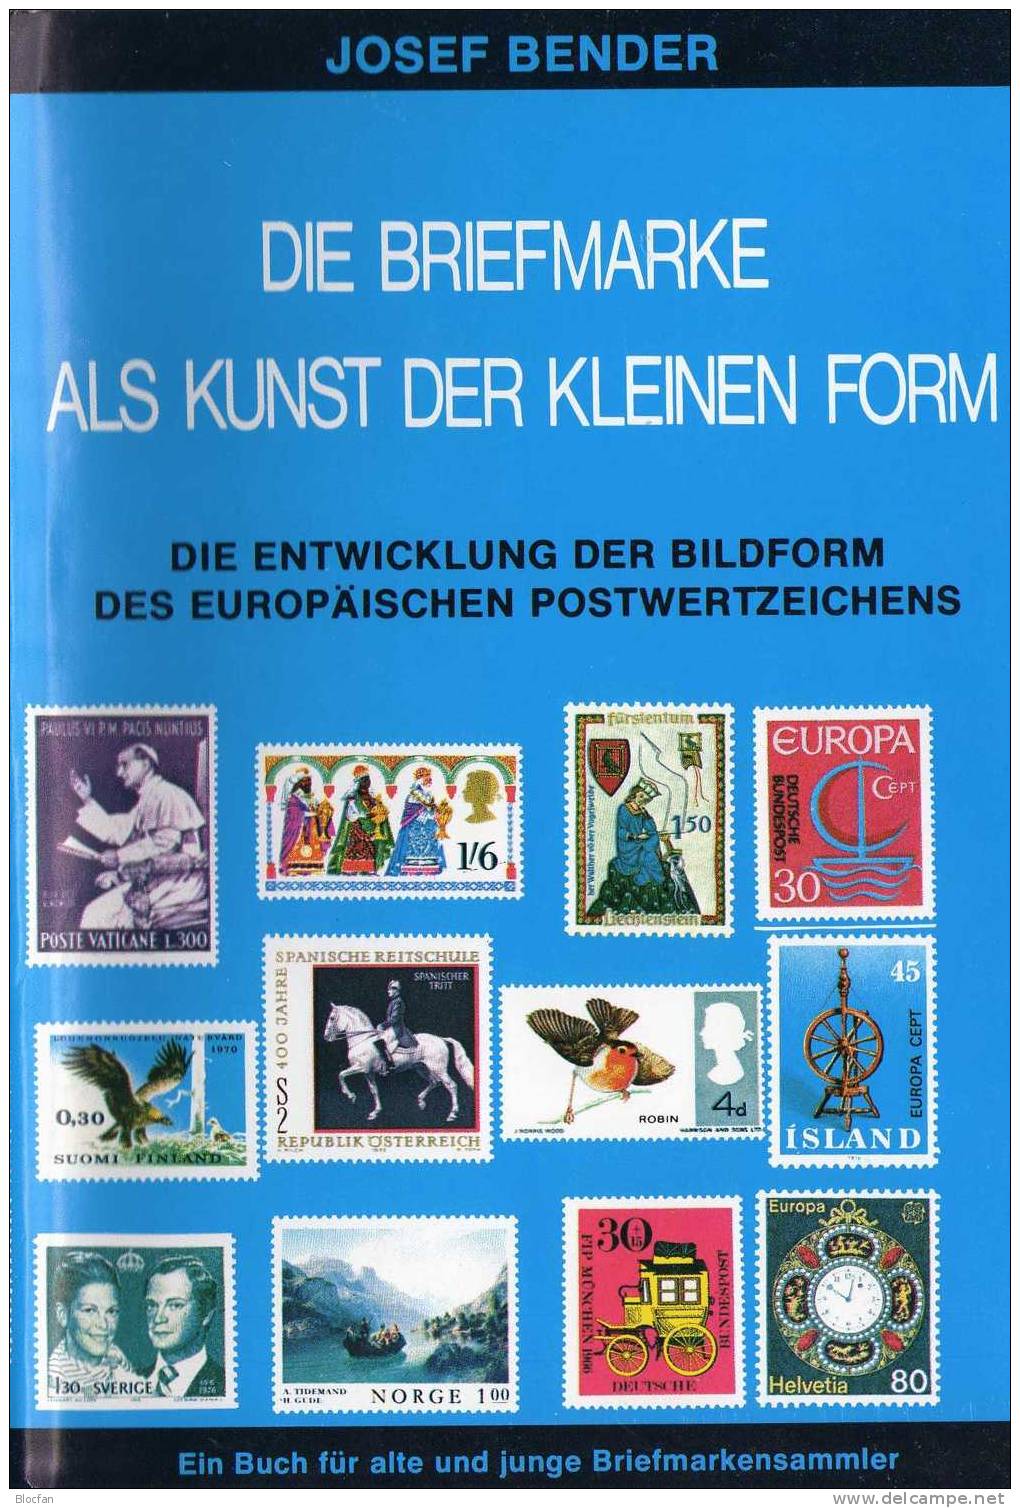 Fachbuch Für Sammler Die Briefmarke Als Kunst 1977 Antiquarisch 20€ Zum Entstehen Der Postwertzeichen Als Kunstwerk - Collections